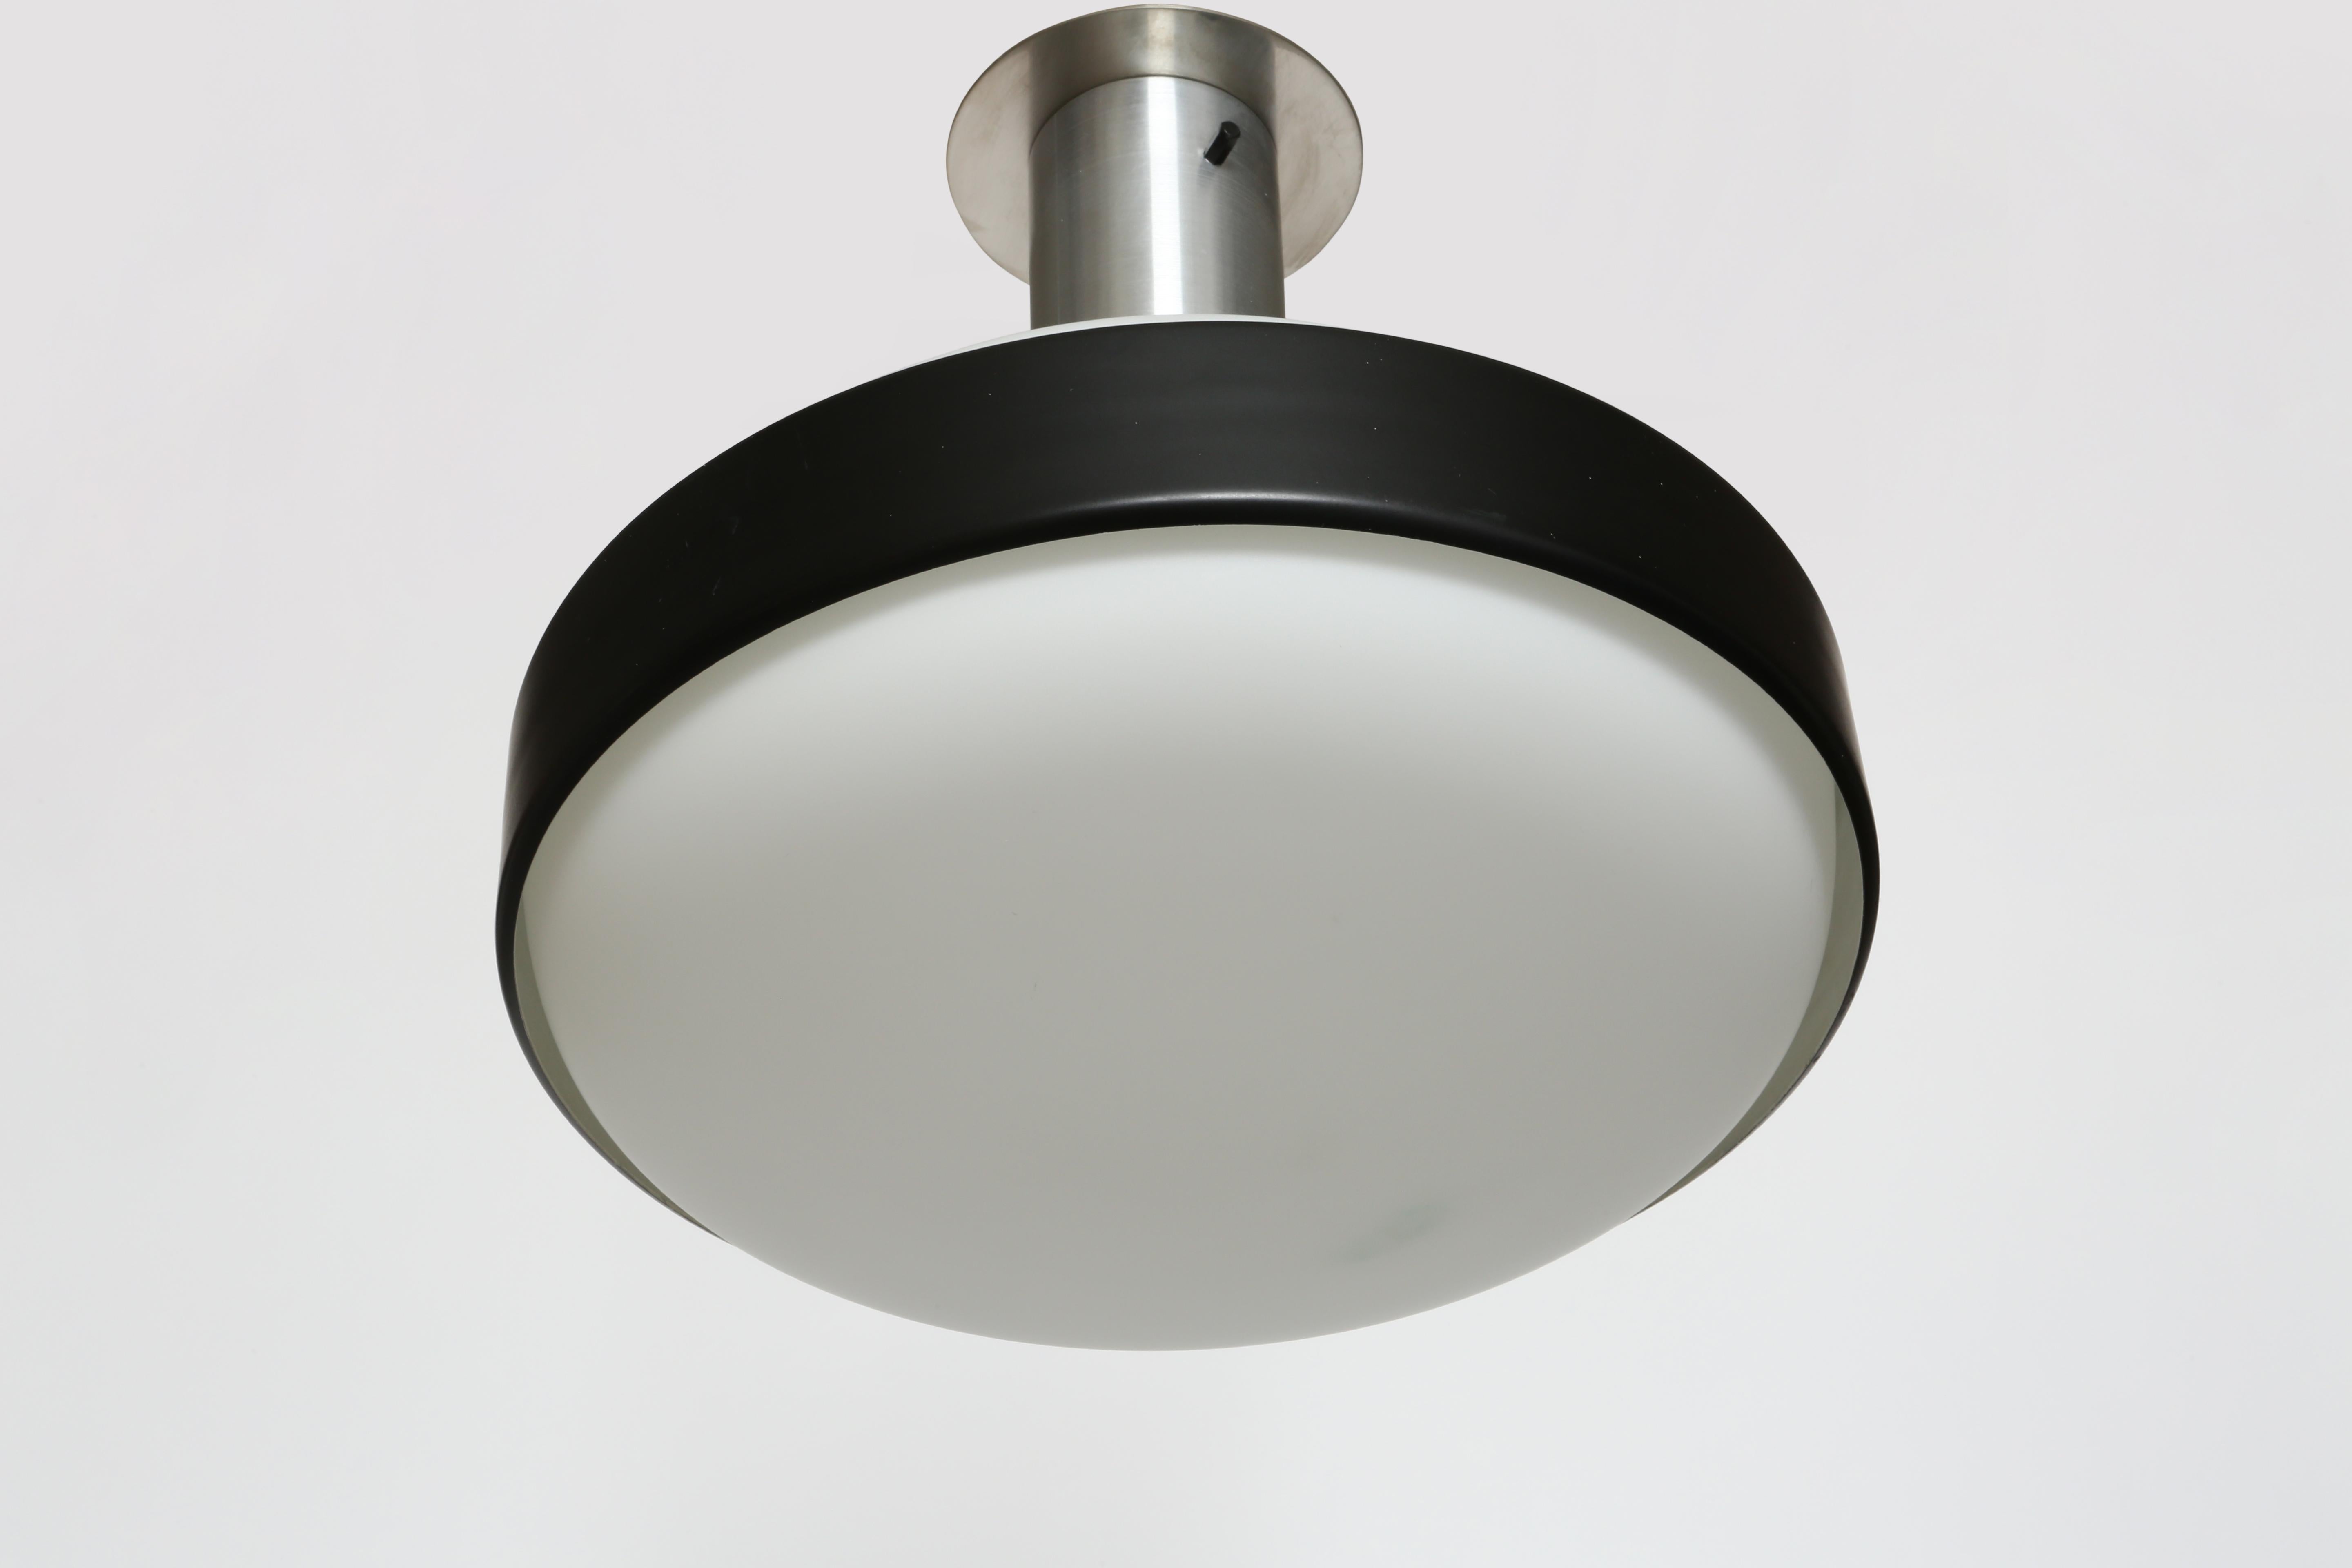 Italian Stilnovo flush mount ceiling light